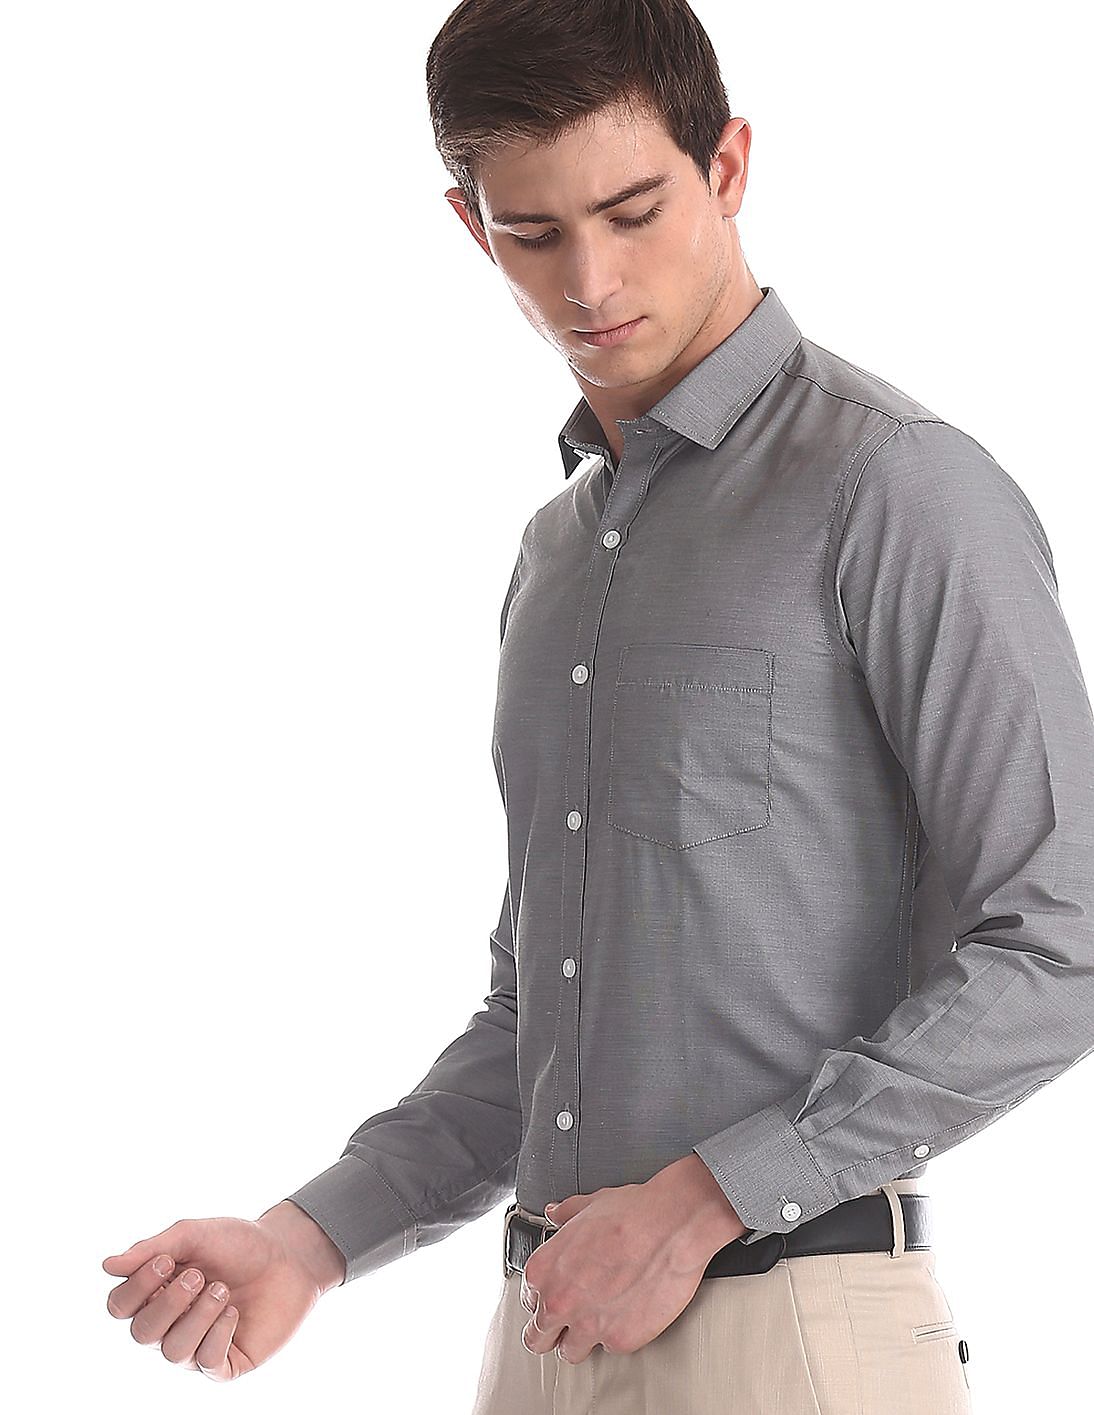 Buy Arrow Grey Urban Slim Fit Cutaway Collar Shirt - NNNOW.com